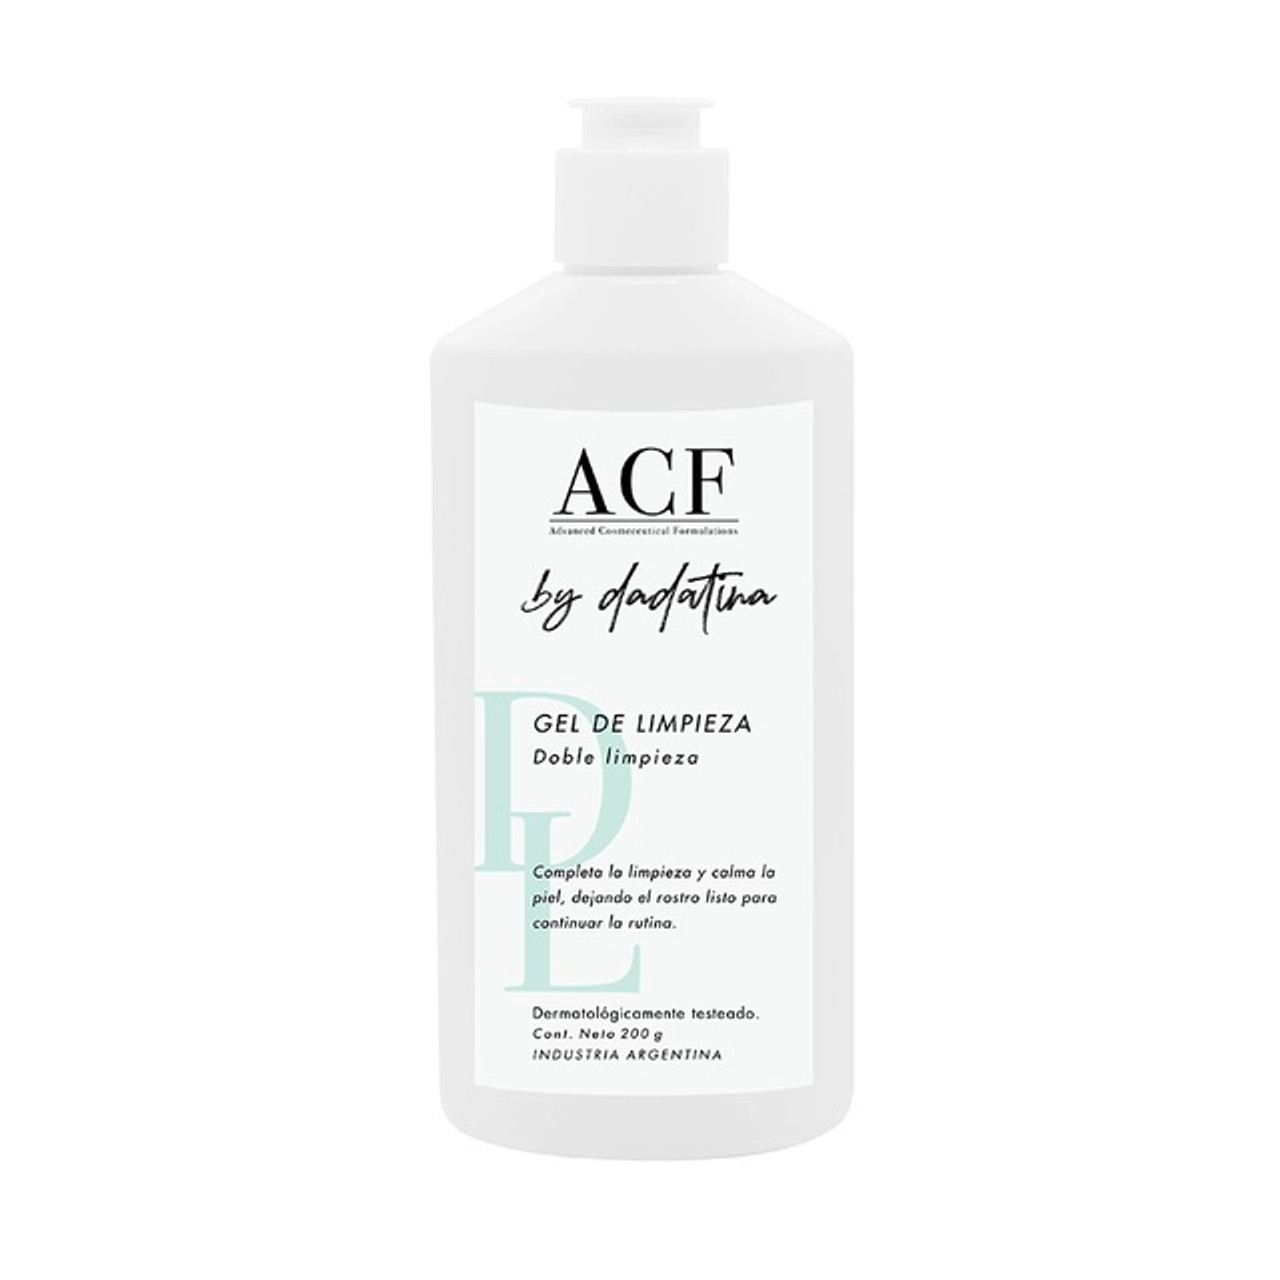 Aceite Limpiador ACF By Dadatina Doble Limpieza